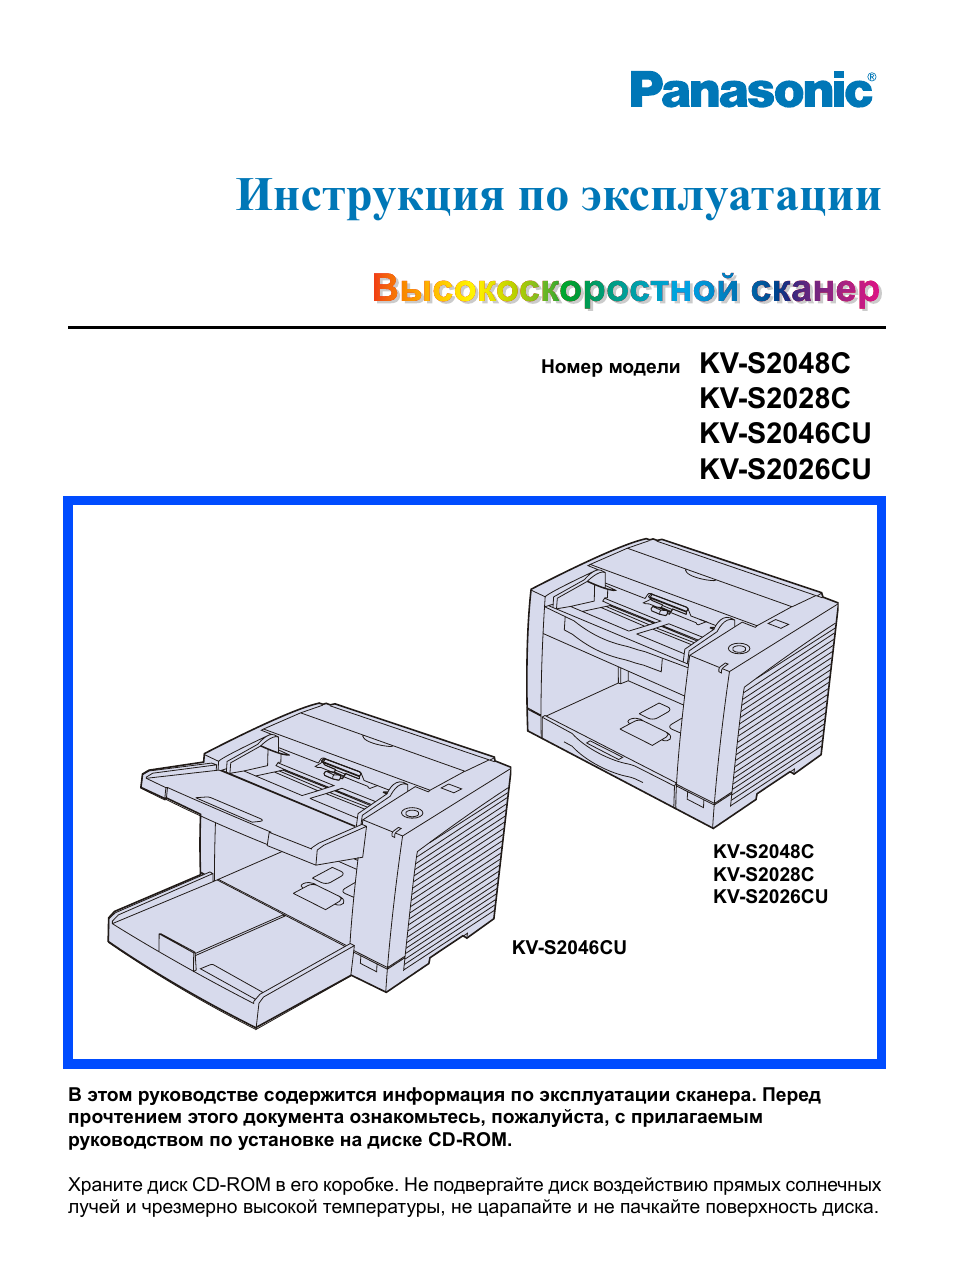 Инструкция по эксплуатации Panasonic KV-S2028C | 48 страниц